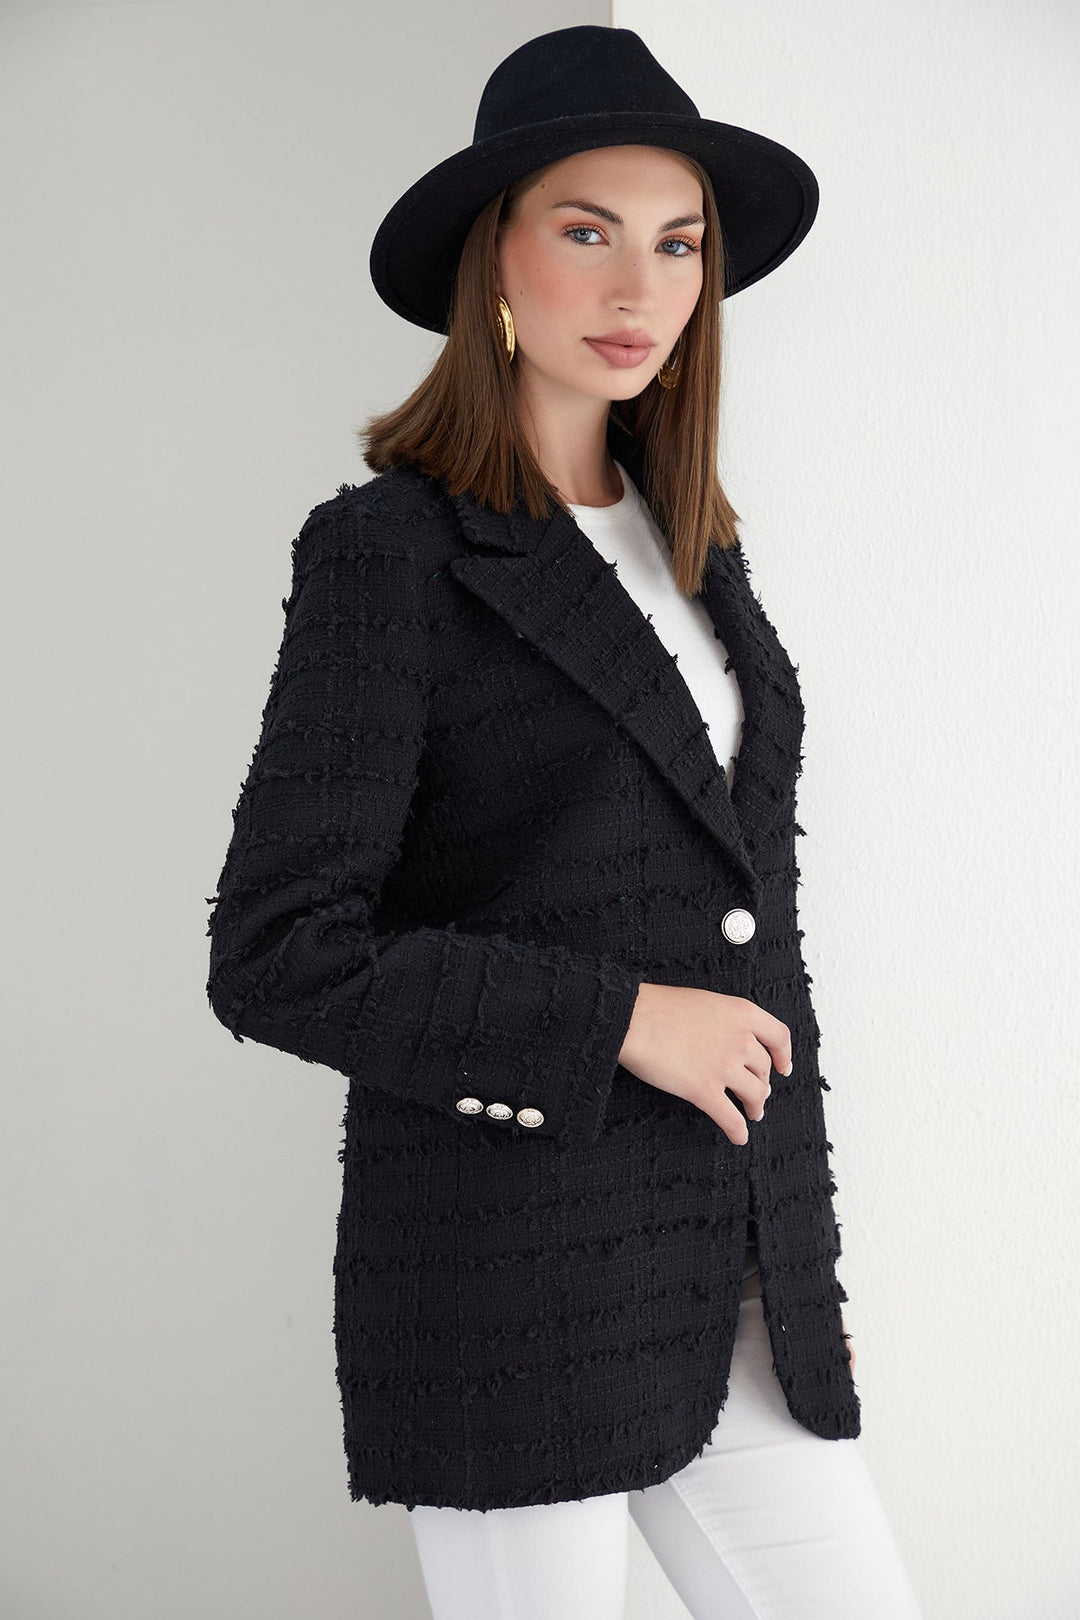 Black Textured Tweed Blazer with 1 Button